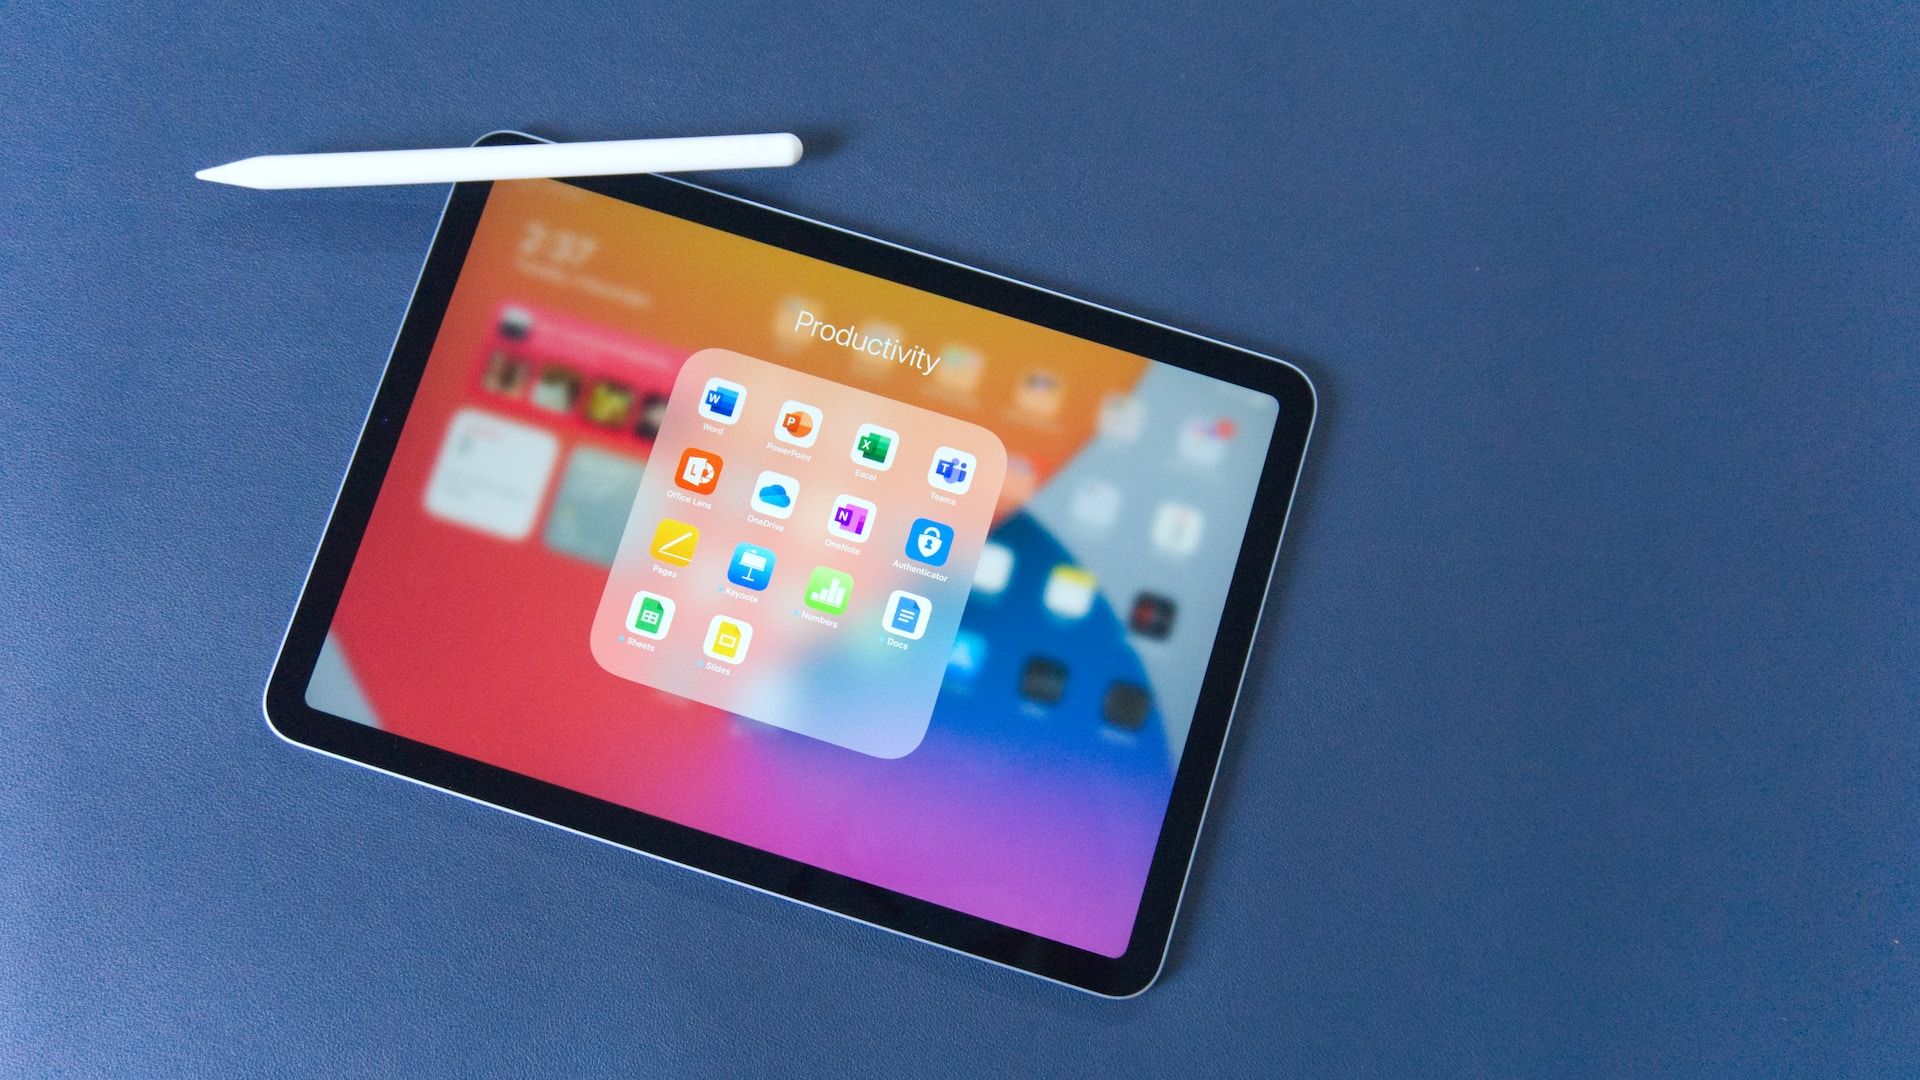 An iPad on a blue surface